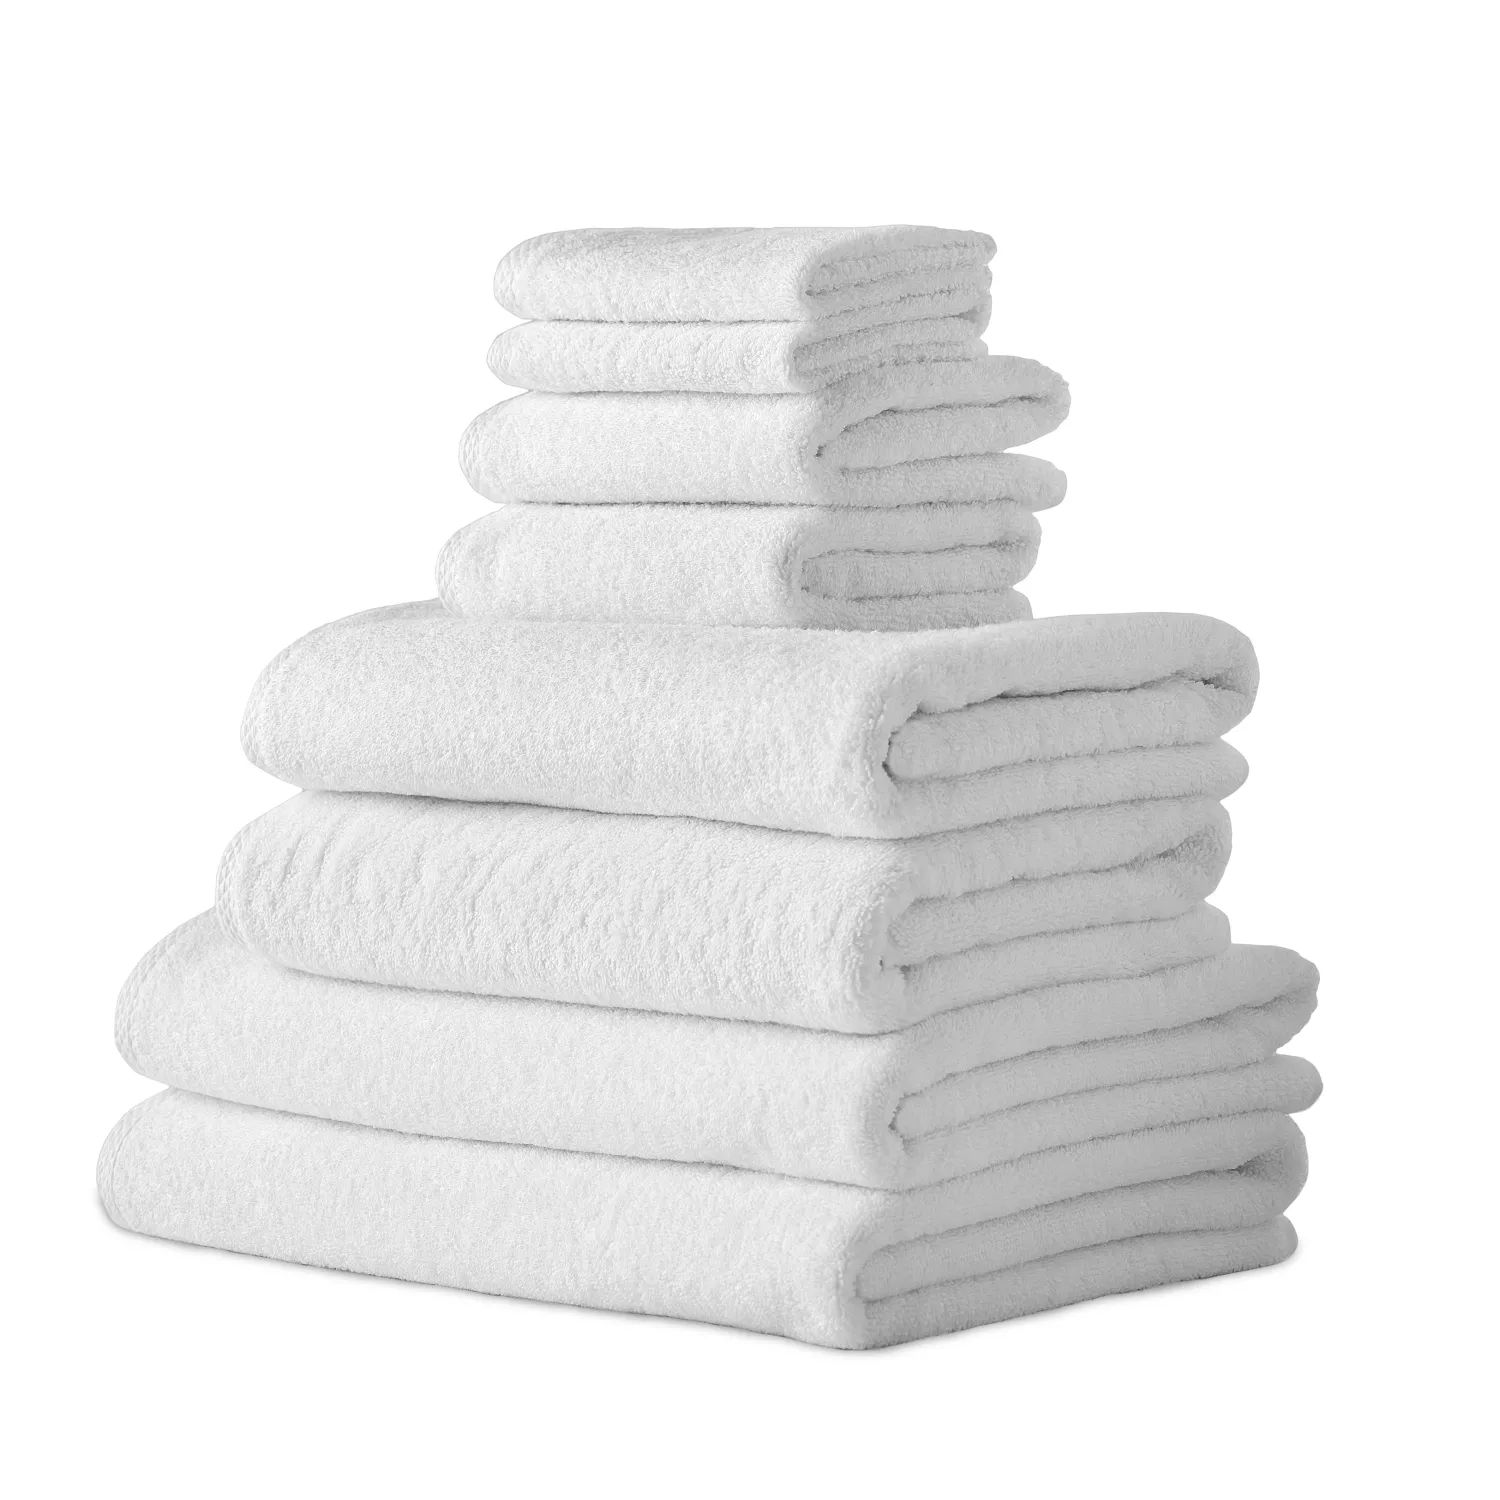 цена Классические турецкие полотенца из натурального хлопка, мягкие впитывающие гостиничные банные полотенца, набор из 8 предметов, белый